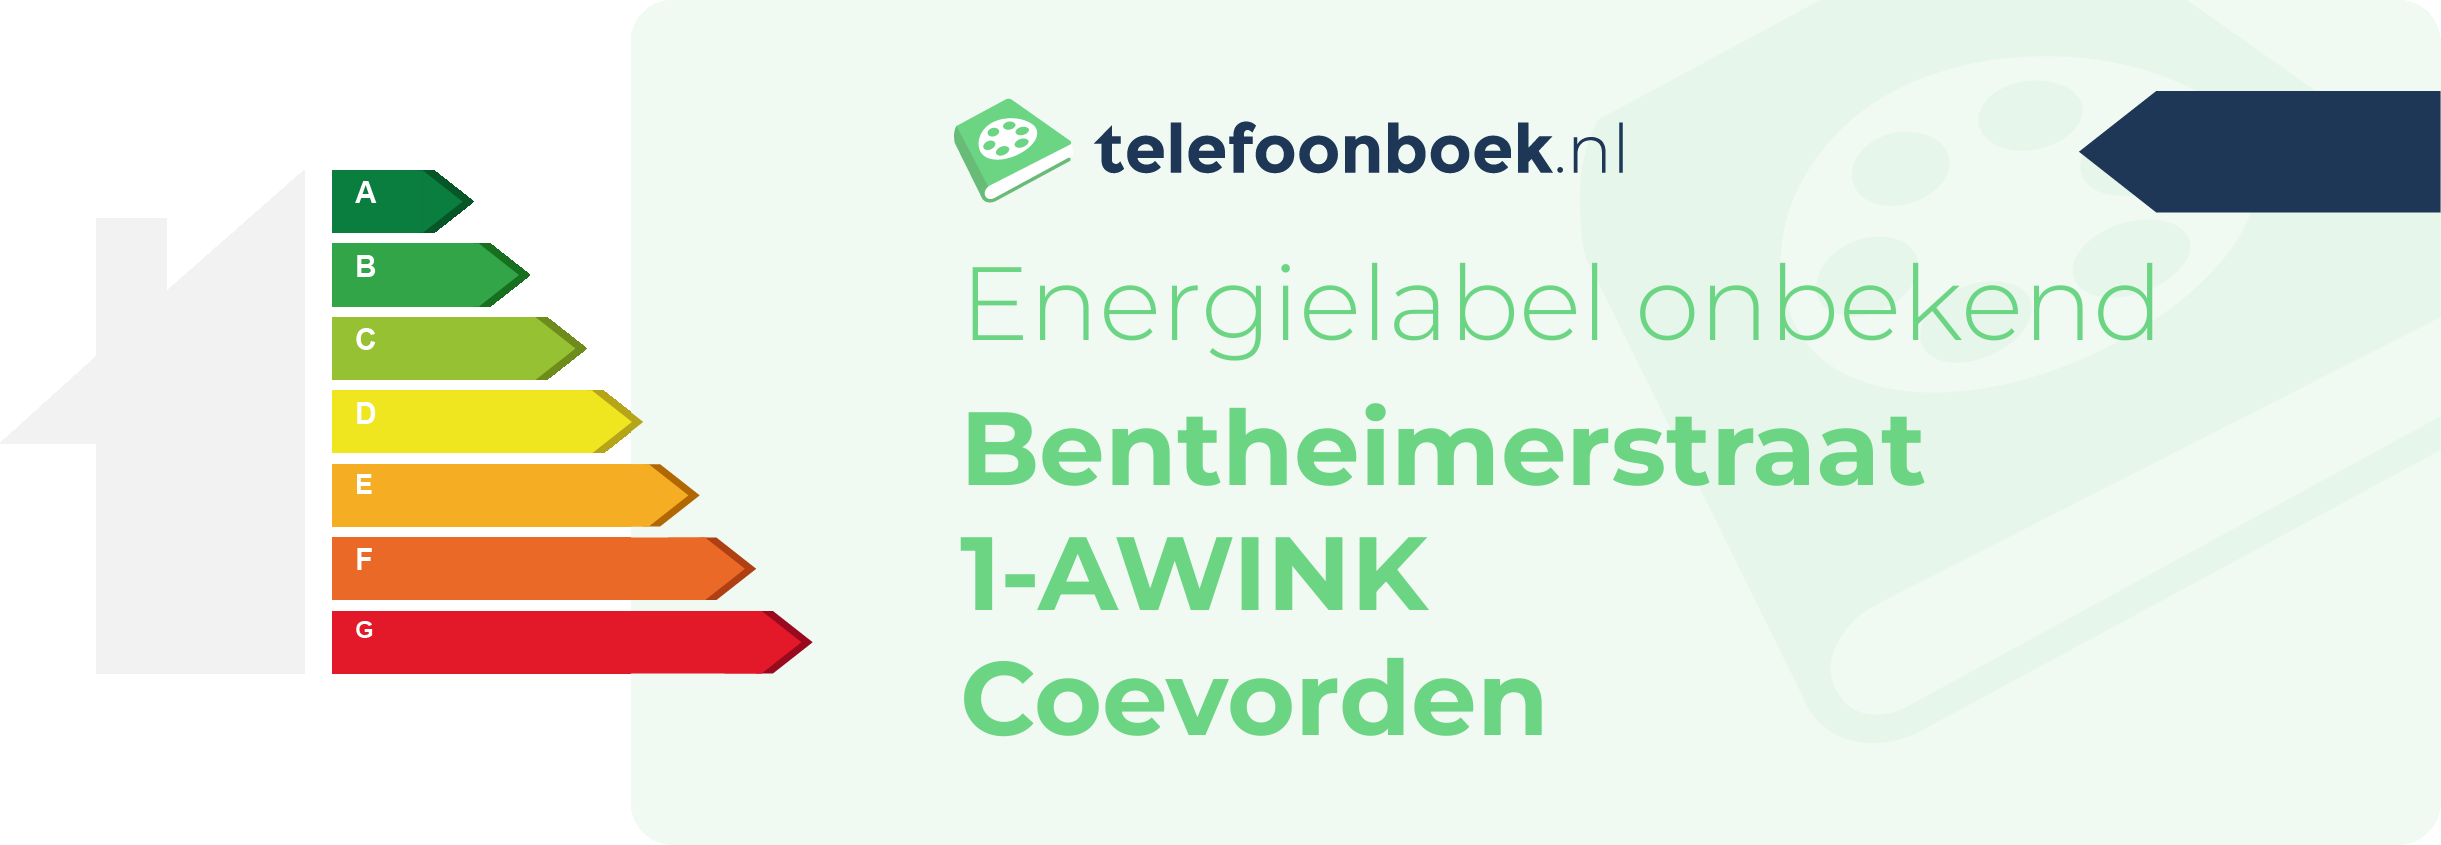 Energielabel Bentheimerstraat 1-AWINK Coevorden